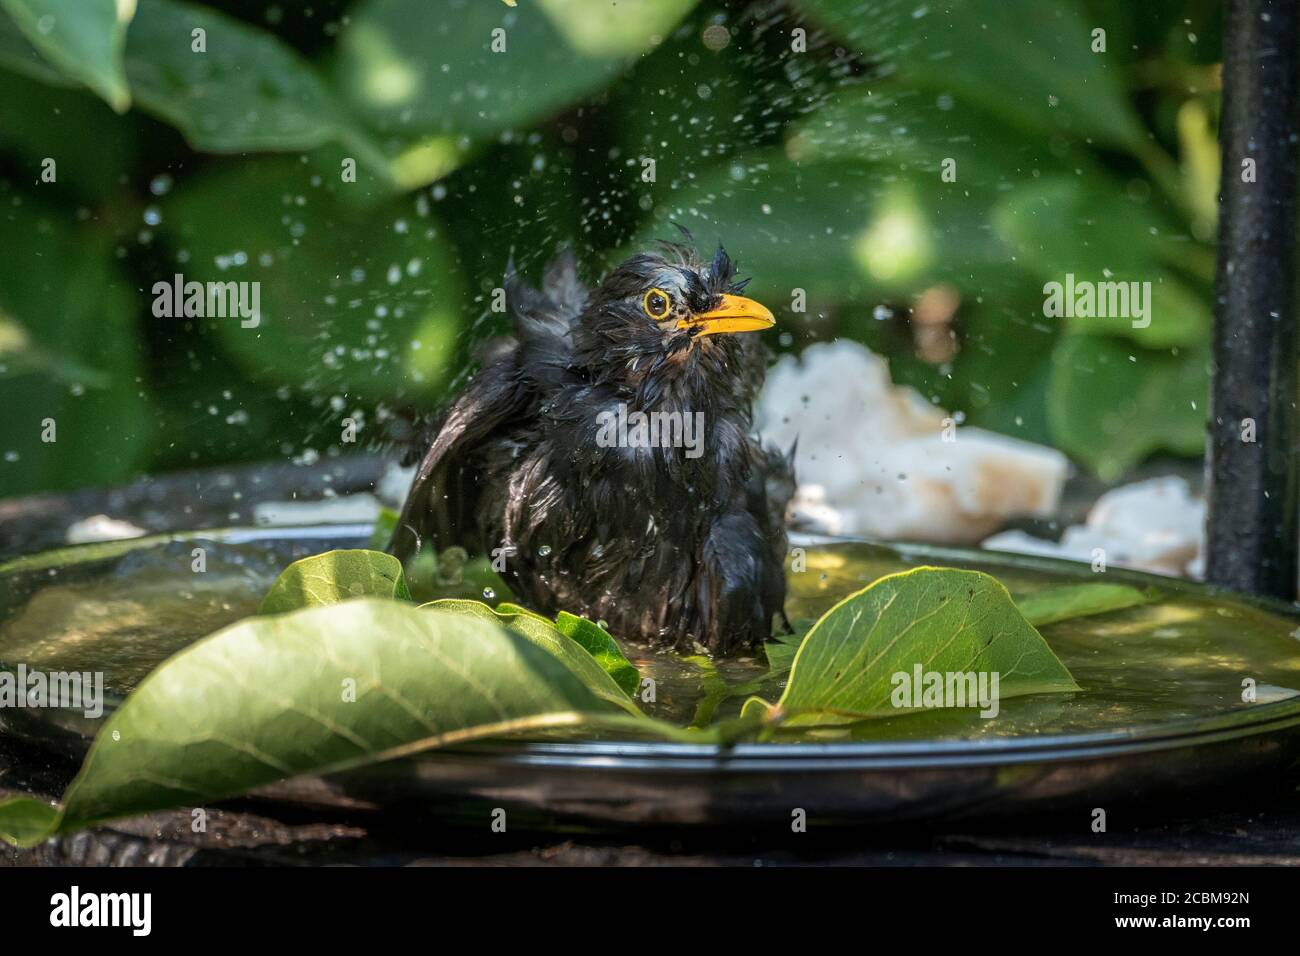 Common garden bird a male blackbird taking a bath in a birdbath. Stock Photo